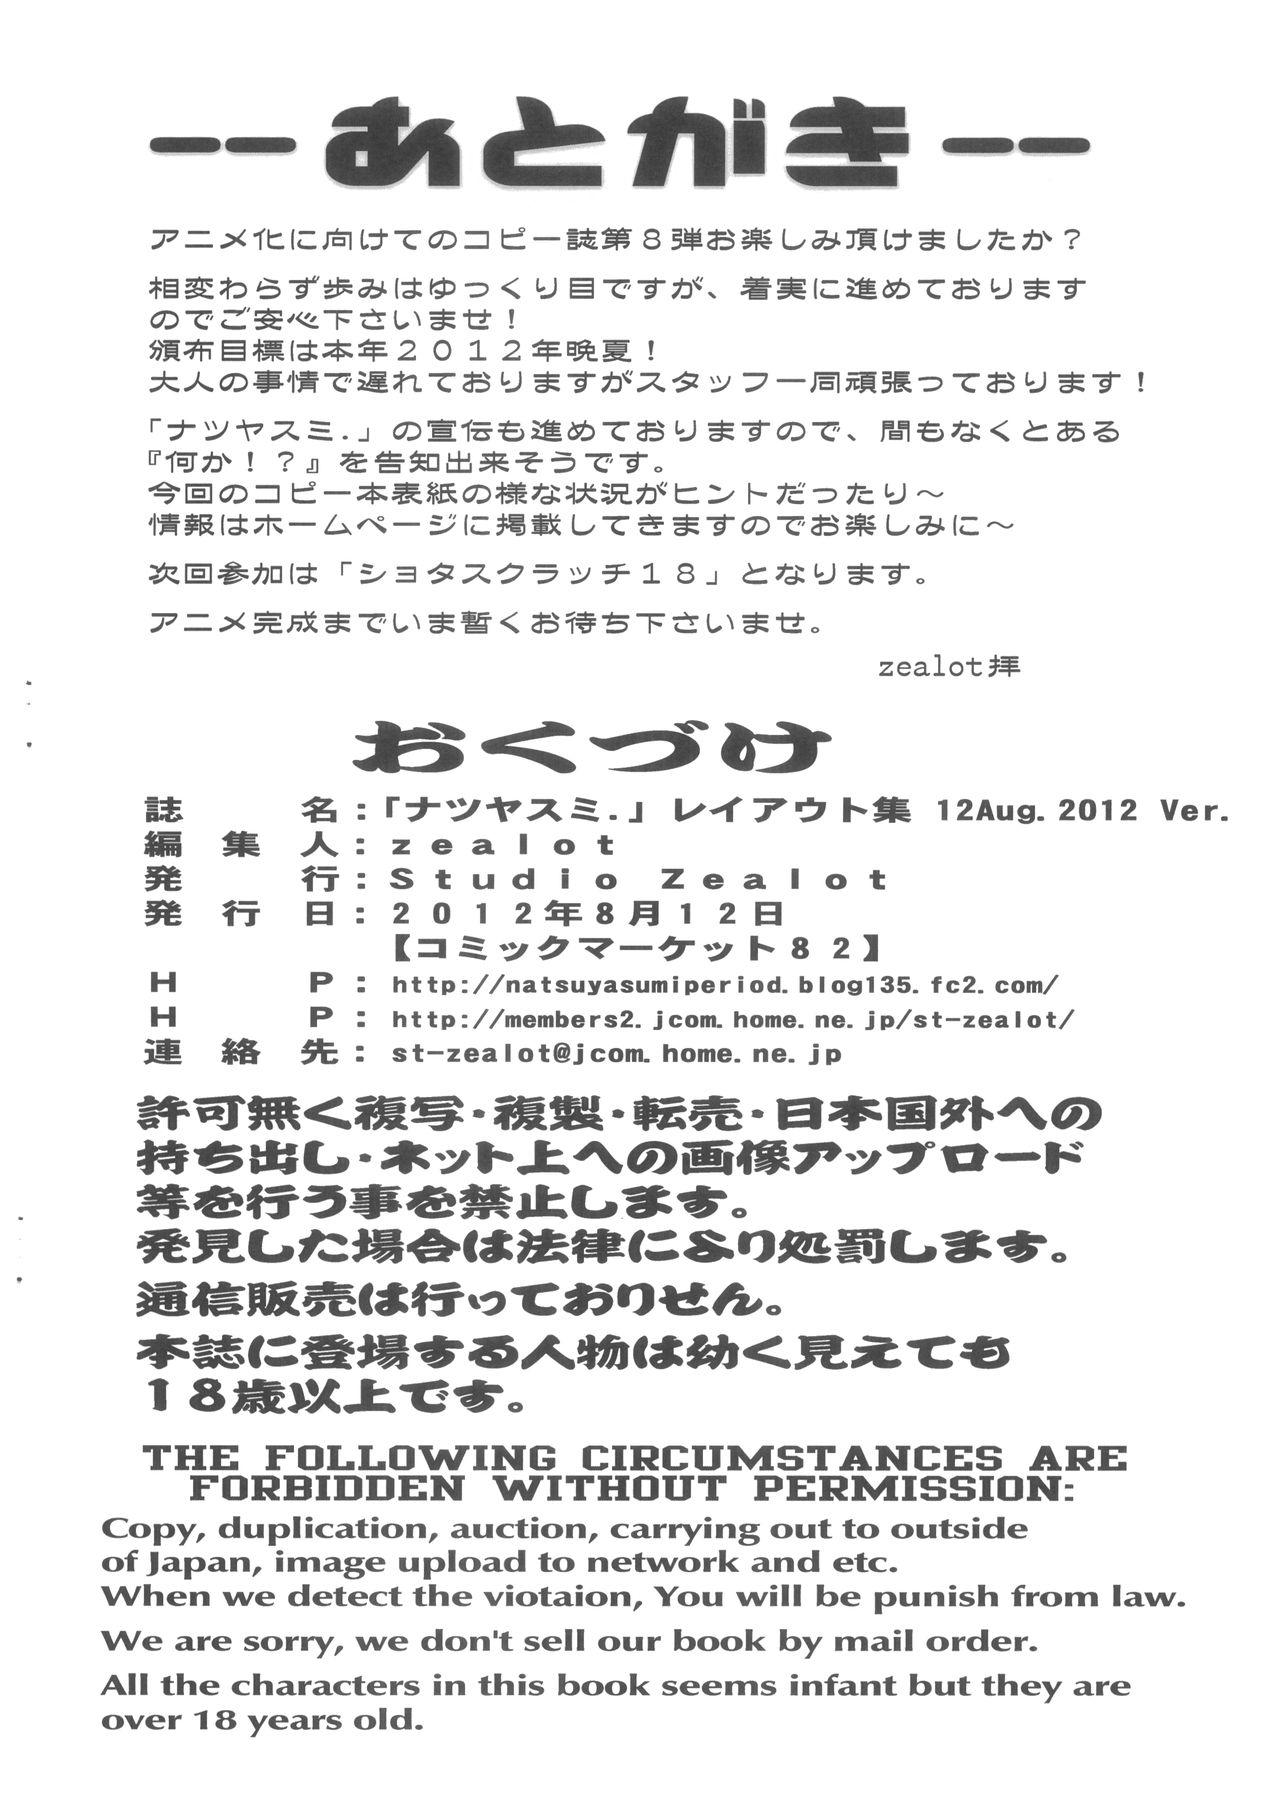 Natsuyasumi Period Layout Shuu 12 Aug. 2012 Ver. 9